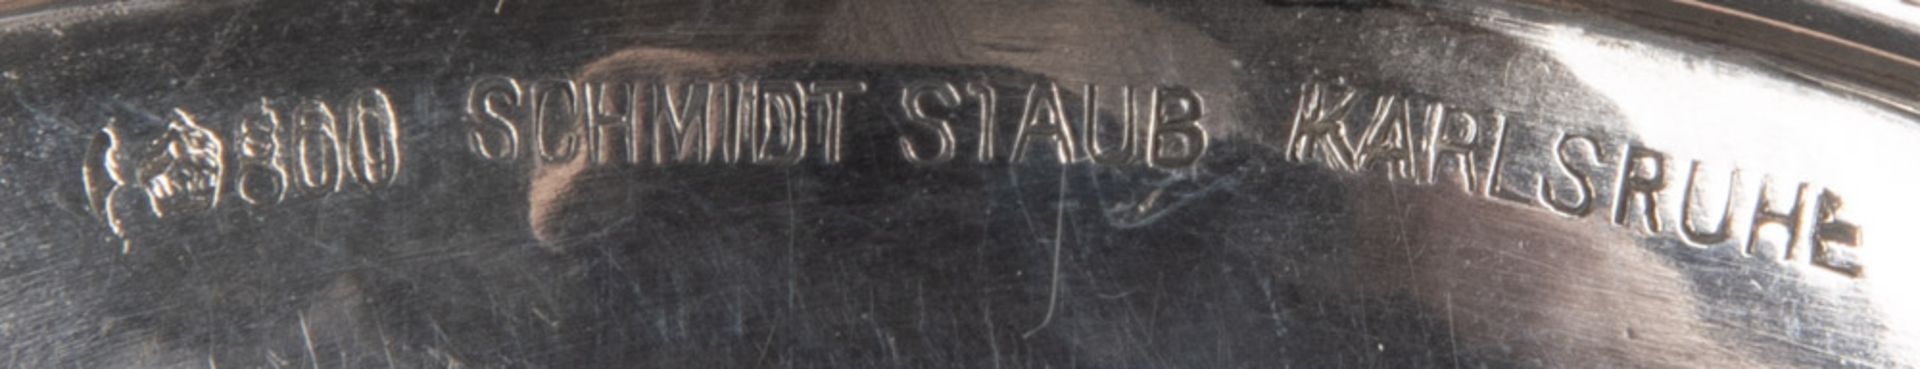 Runde Erinnerungsschale I. WK. Karlsruhe, Schmidt & Staub 1914. 800er Silber, ca. 57 g, verso - Bild 2 aus 2